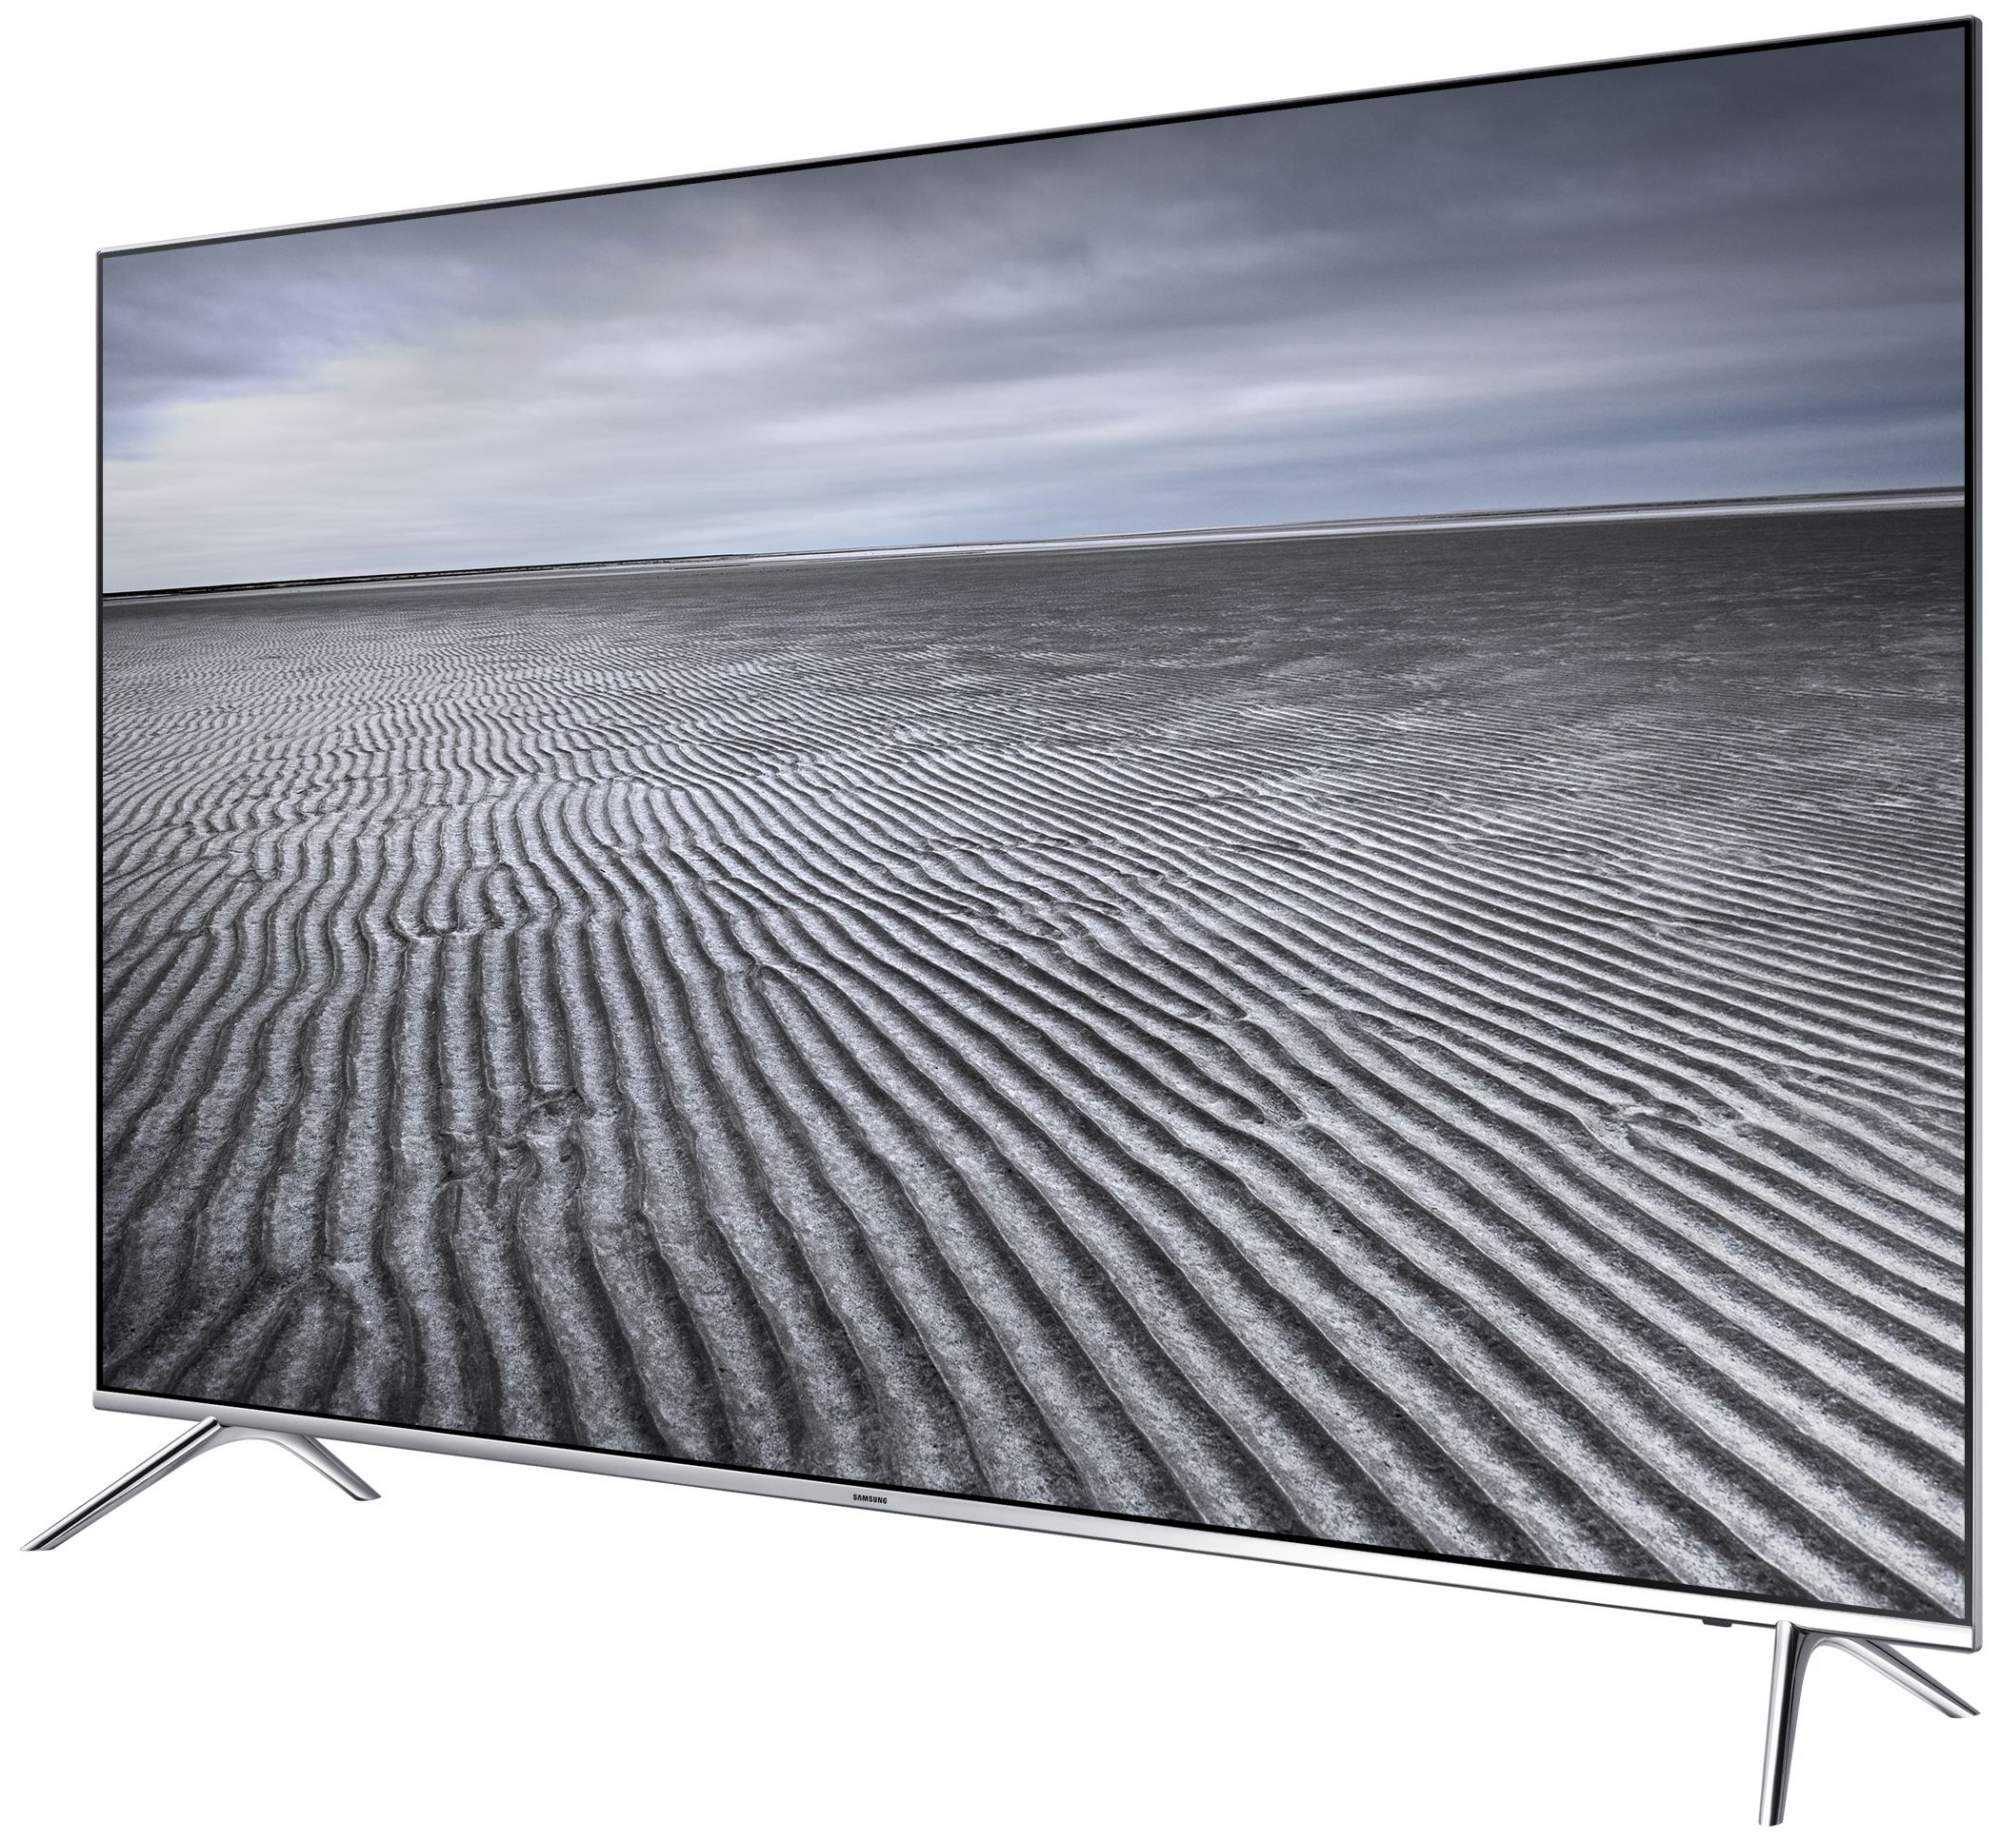 Телевизор Samsung UE60H7000 - подробные характеристики обзоры видео фото Цены в интернет-магазинах где можно купить телевизор Samsung UE60H7000